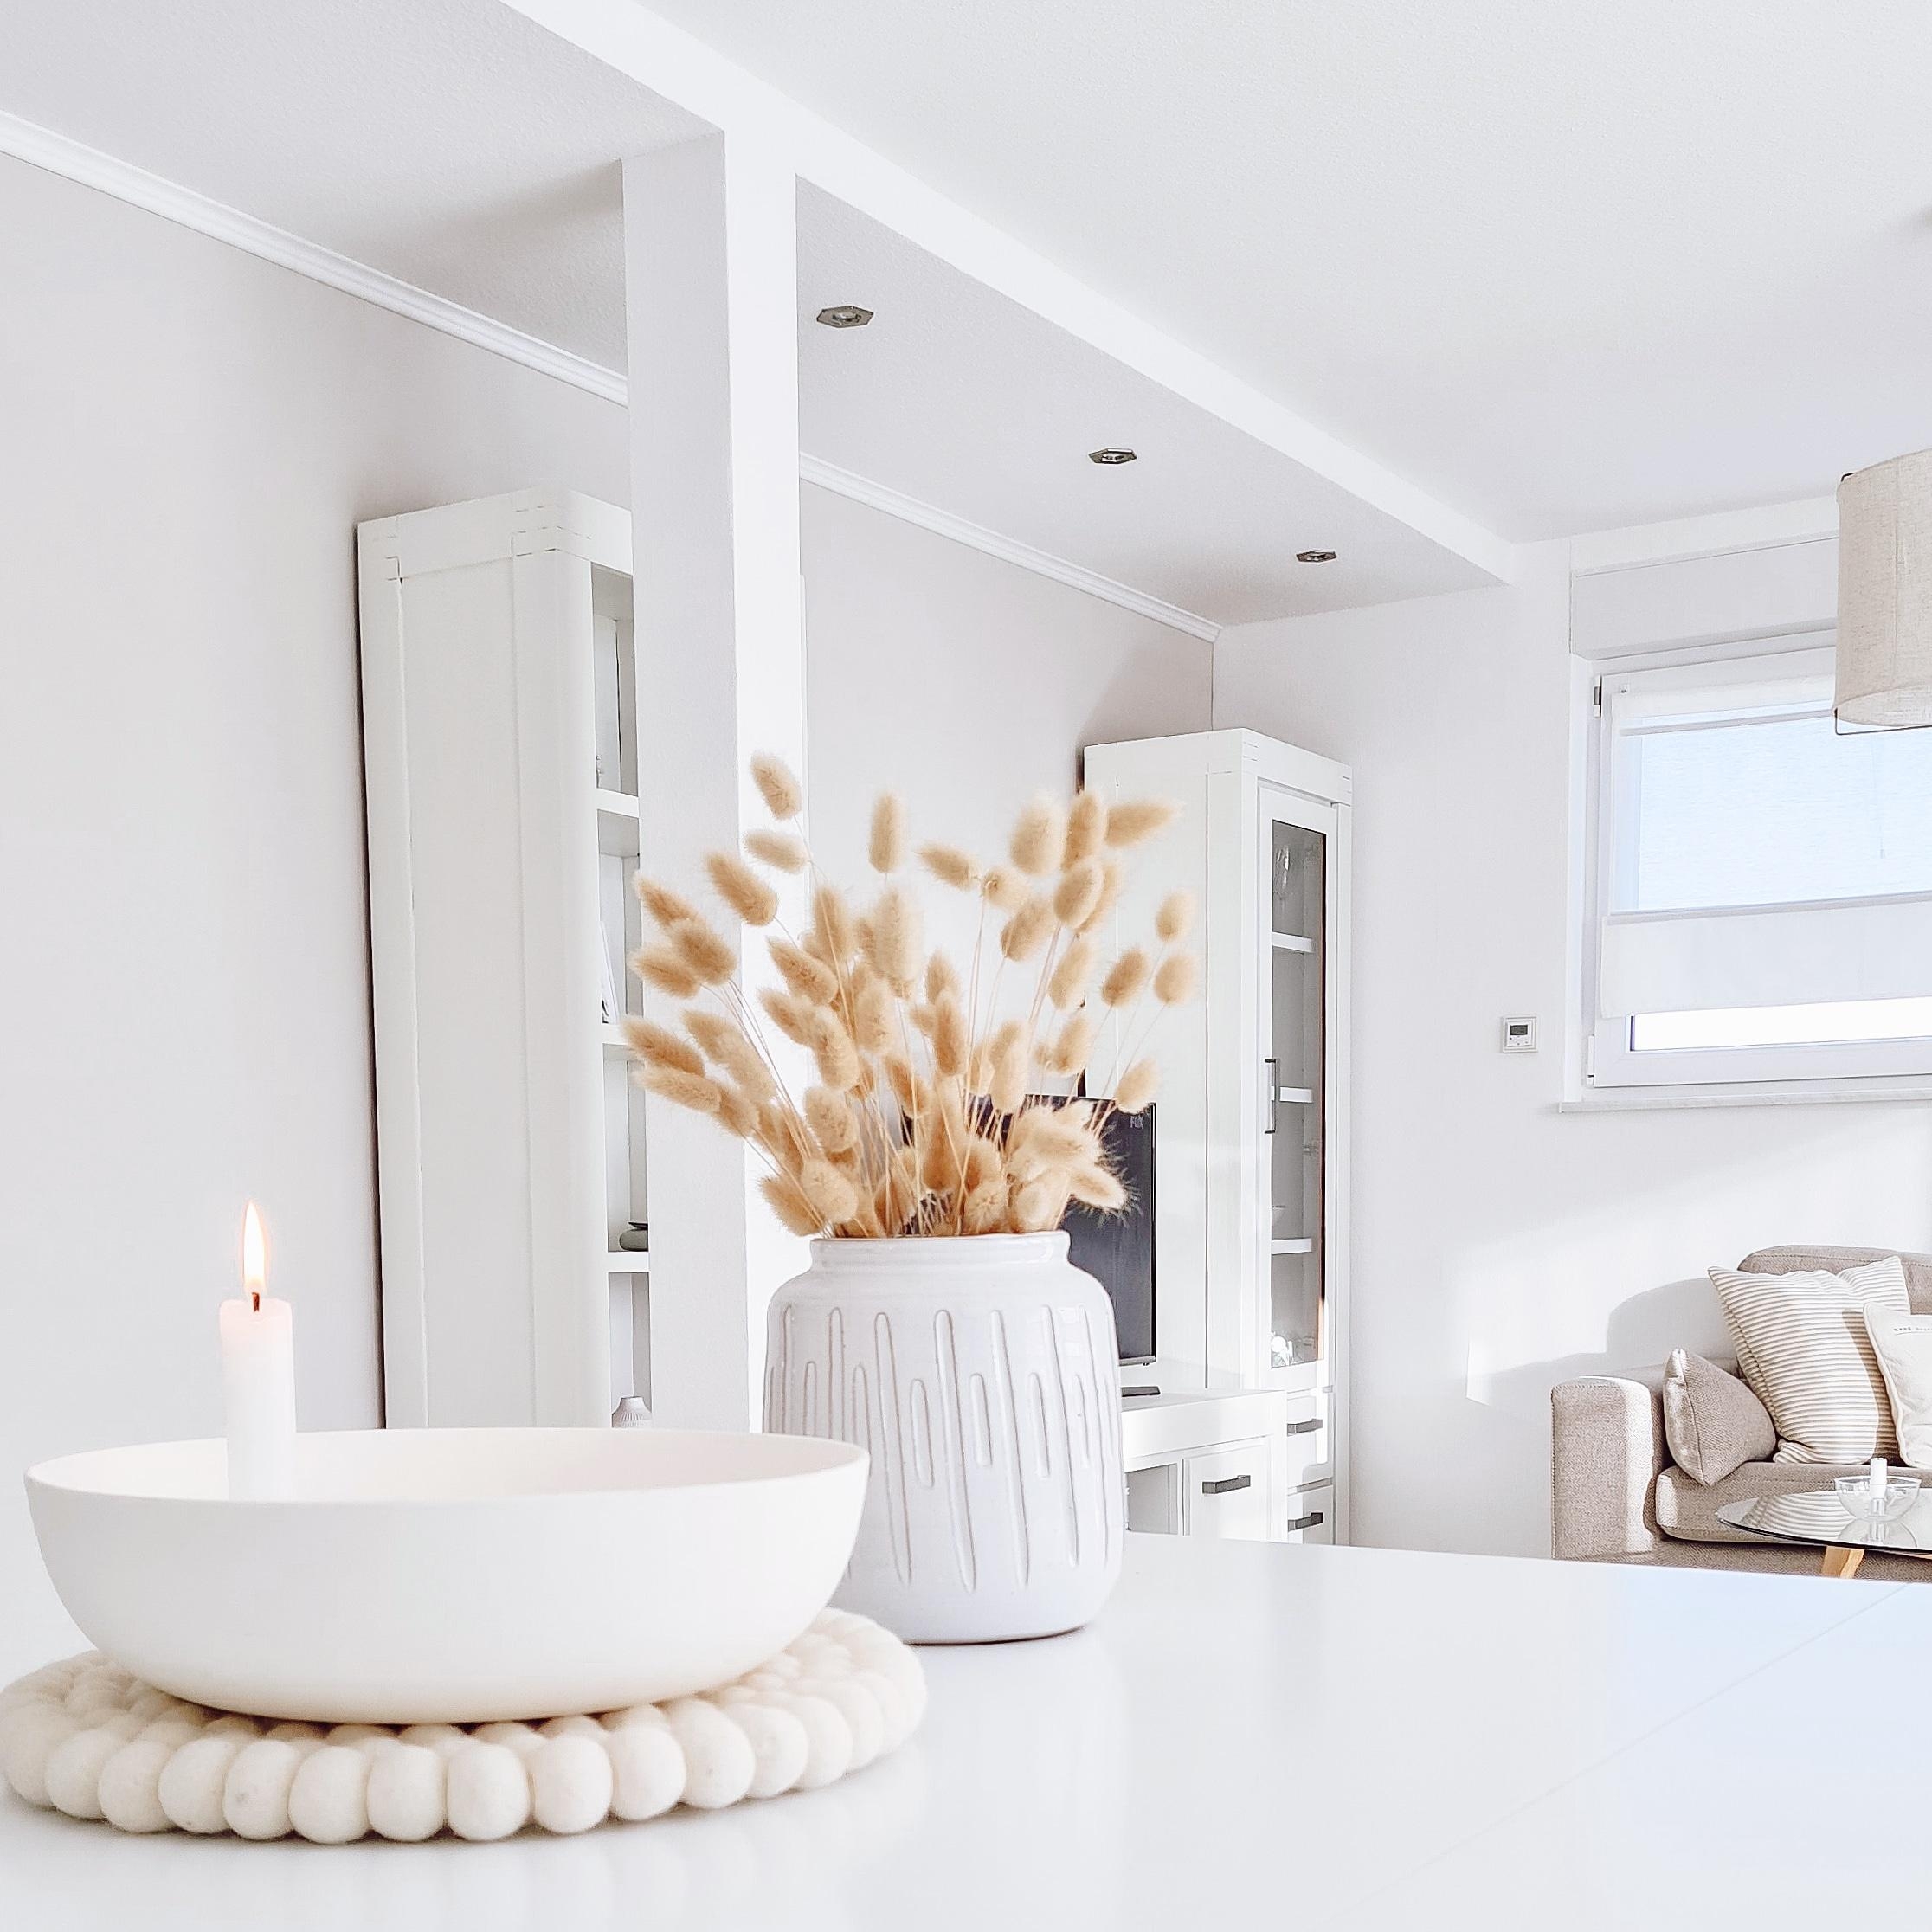 Ein kleiner Blick in unseren Wohnbereich mit unseren weiß gestrichenen Möbeln.
#wohnzimmer #vase #sofa #whiteinterior 